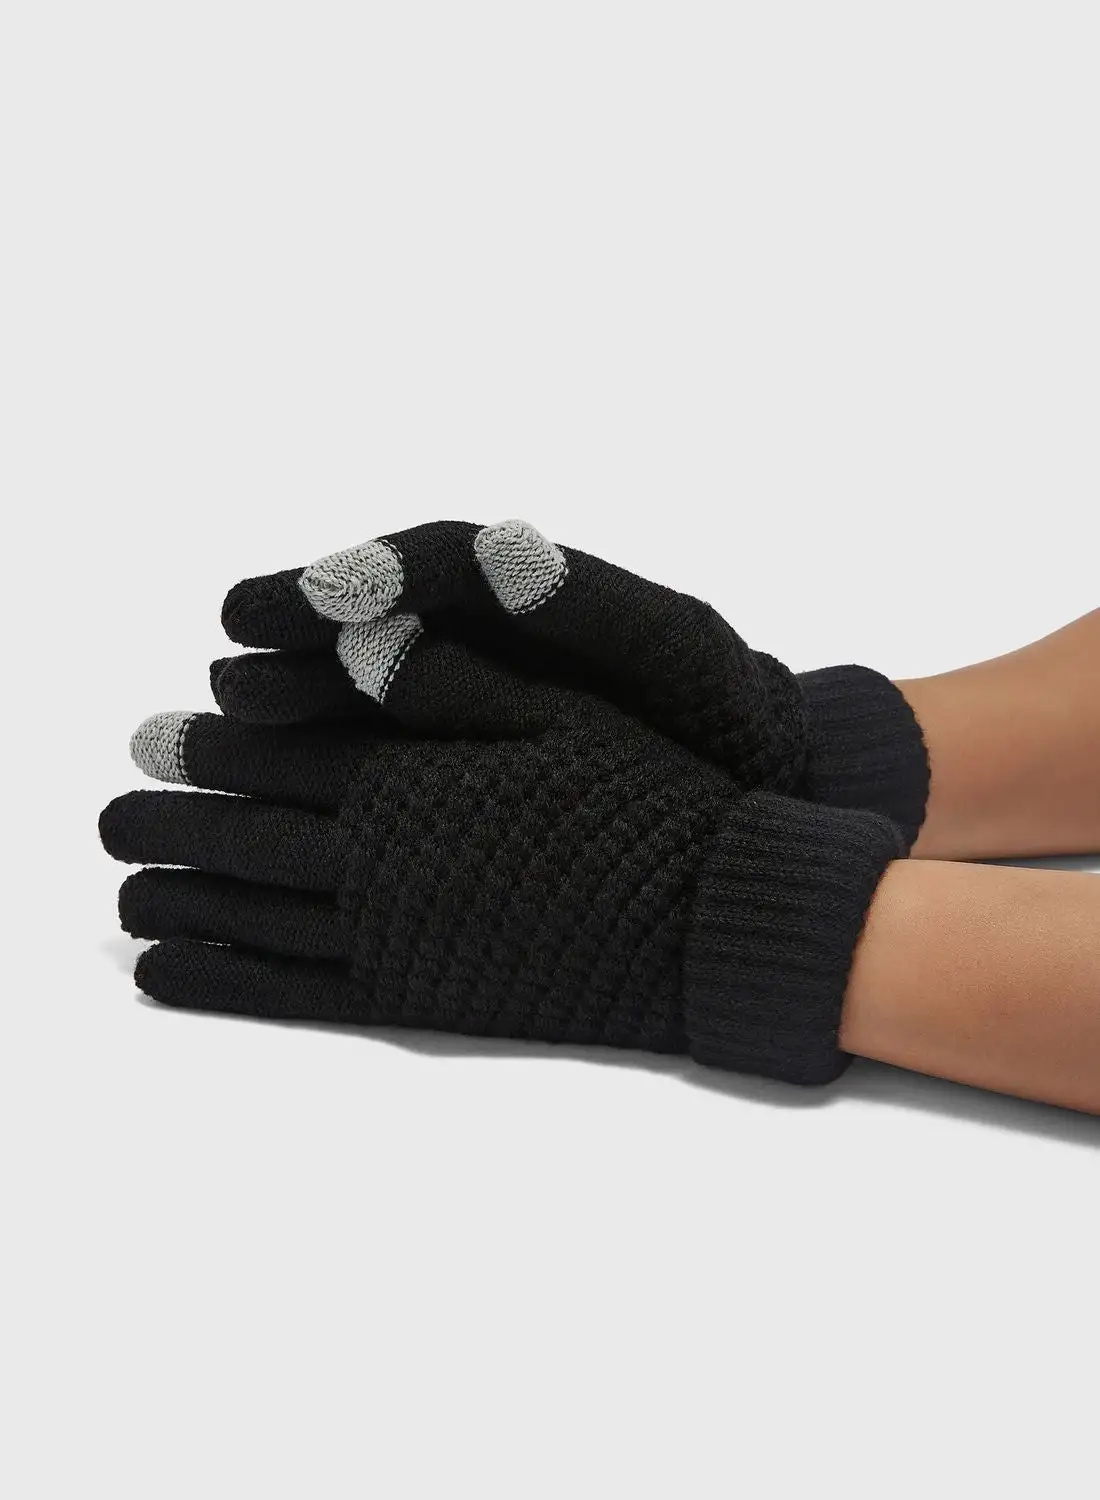 ELLA Knitted Winter Glove